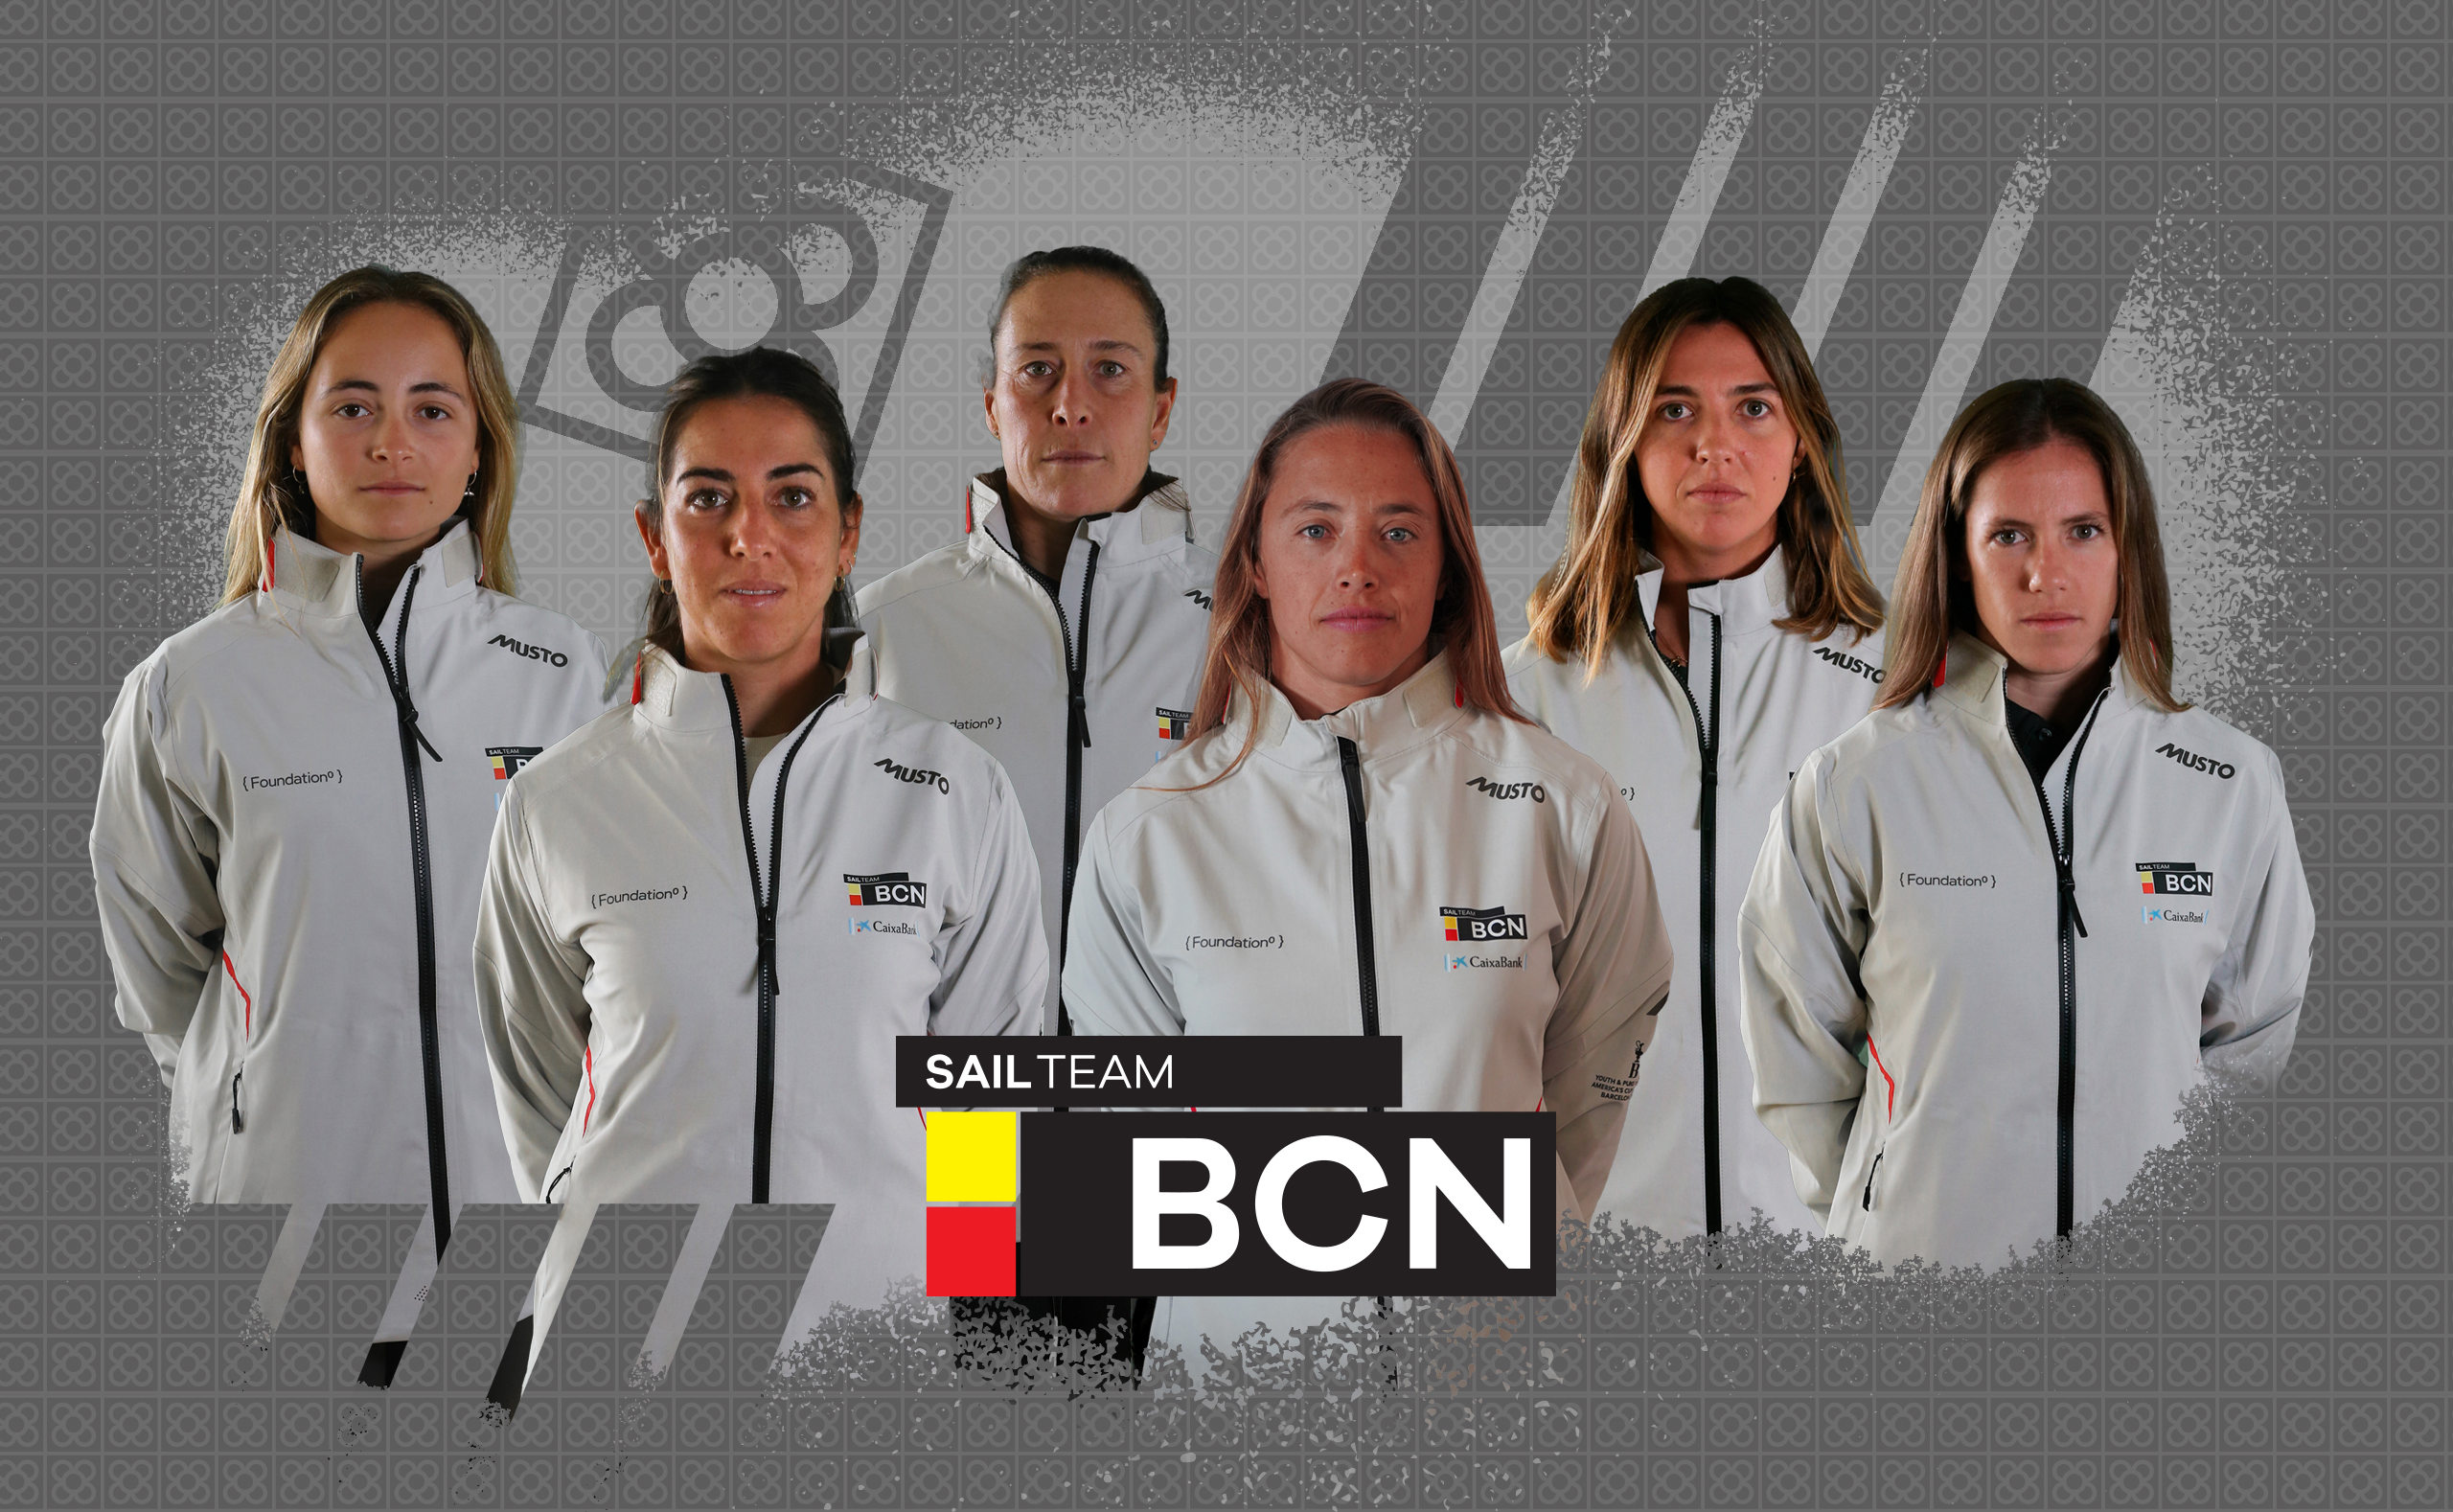 Sail Team BCN announce Nicole van der Velden to join the Spanish women’steam.